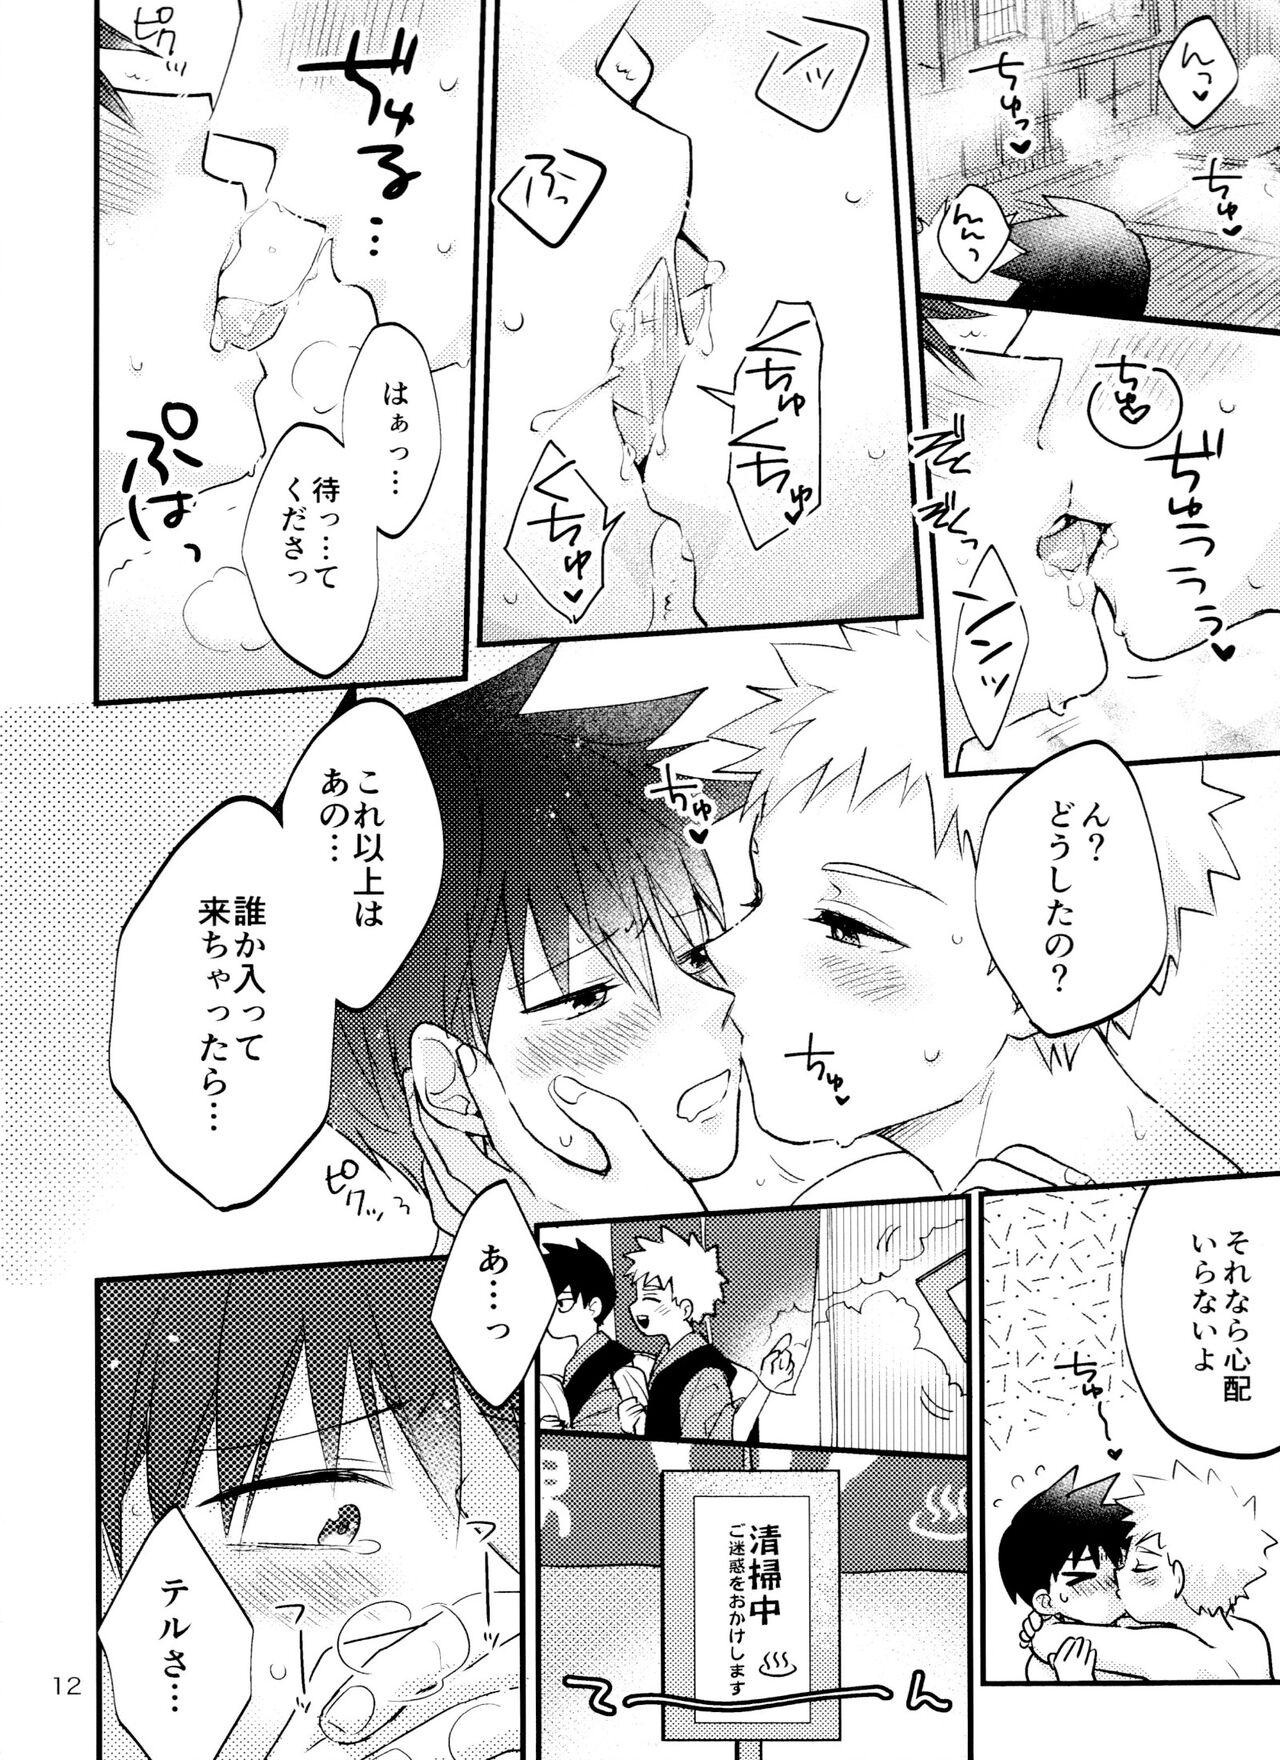 Massive Son'na tsumori janain desu! - Mob psycho 100 Gay Group - Page 11